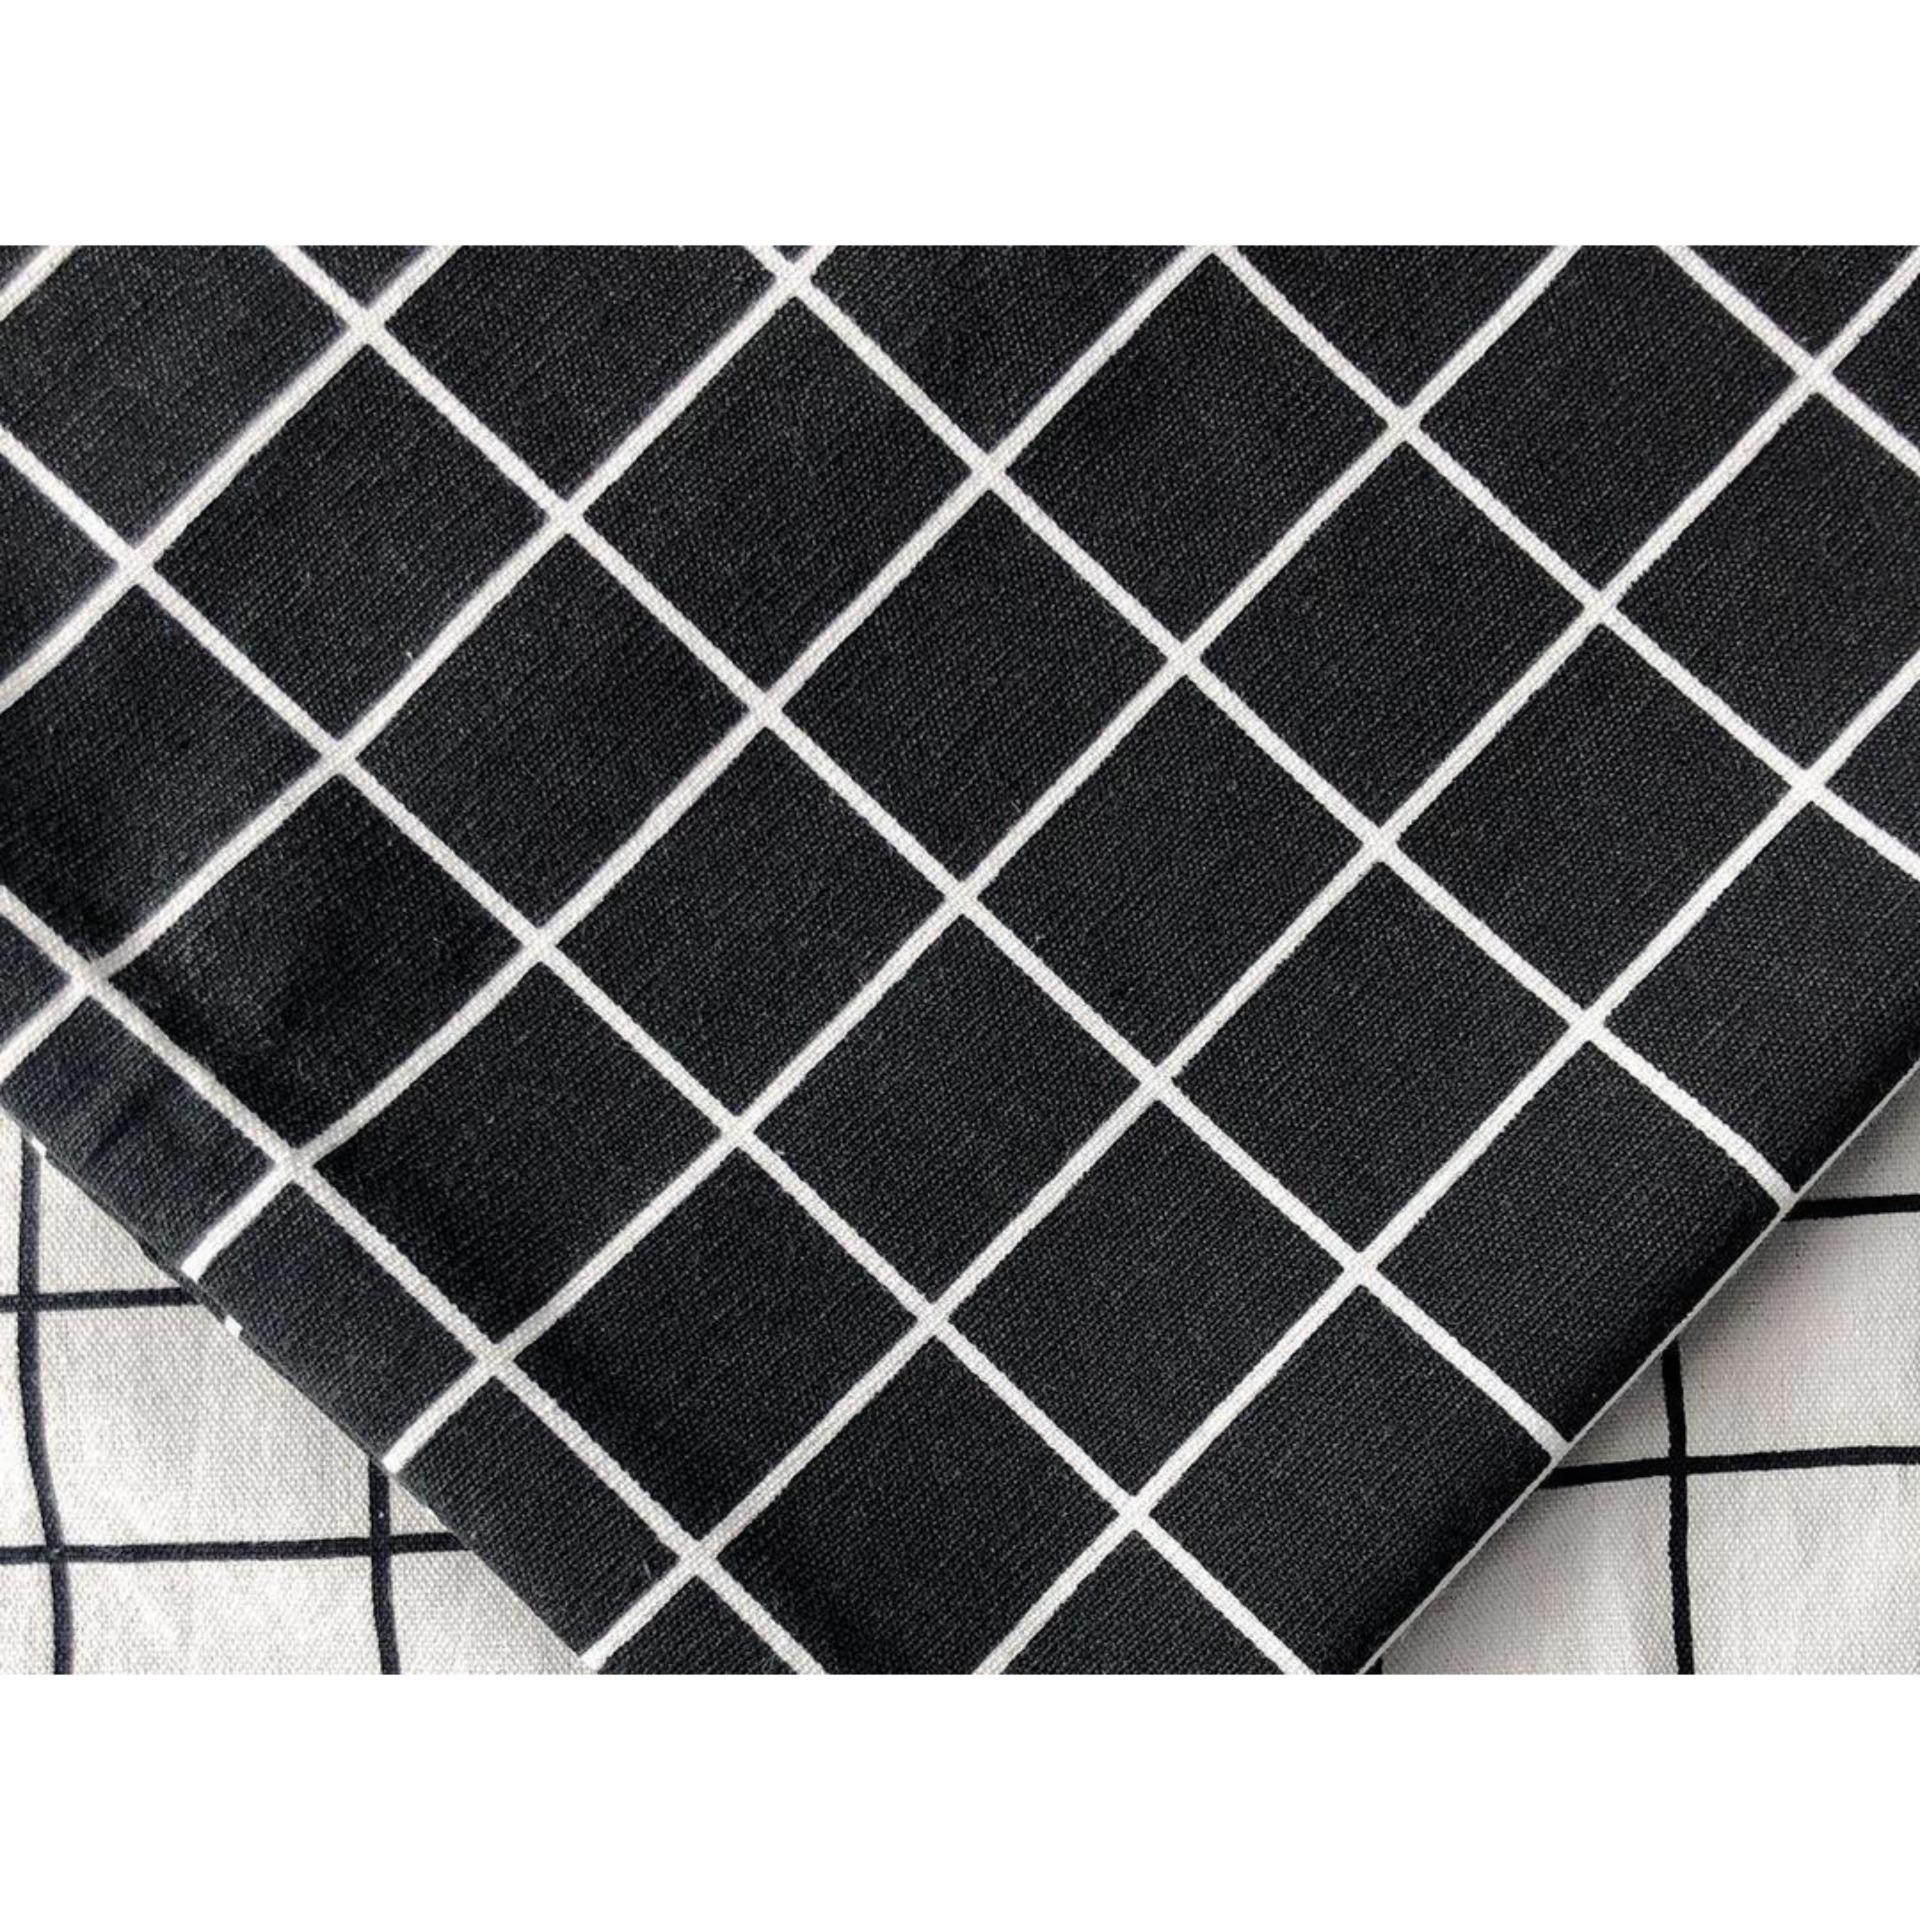 91 Fabric texture  Caro ý tưởng  danh thiếp sáng tạo giấy viết vải